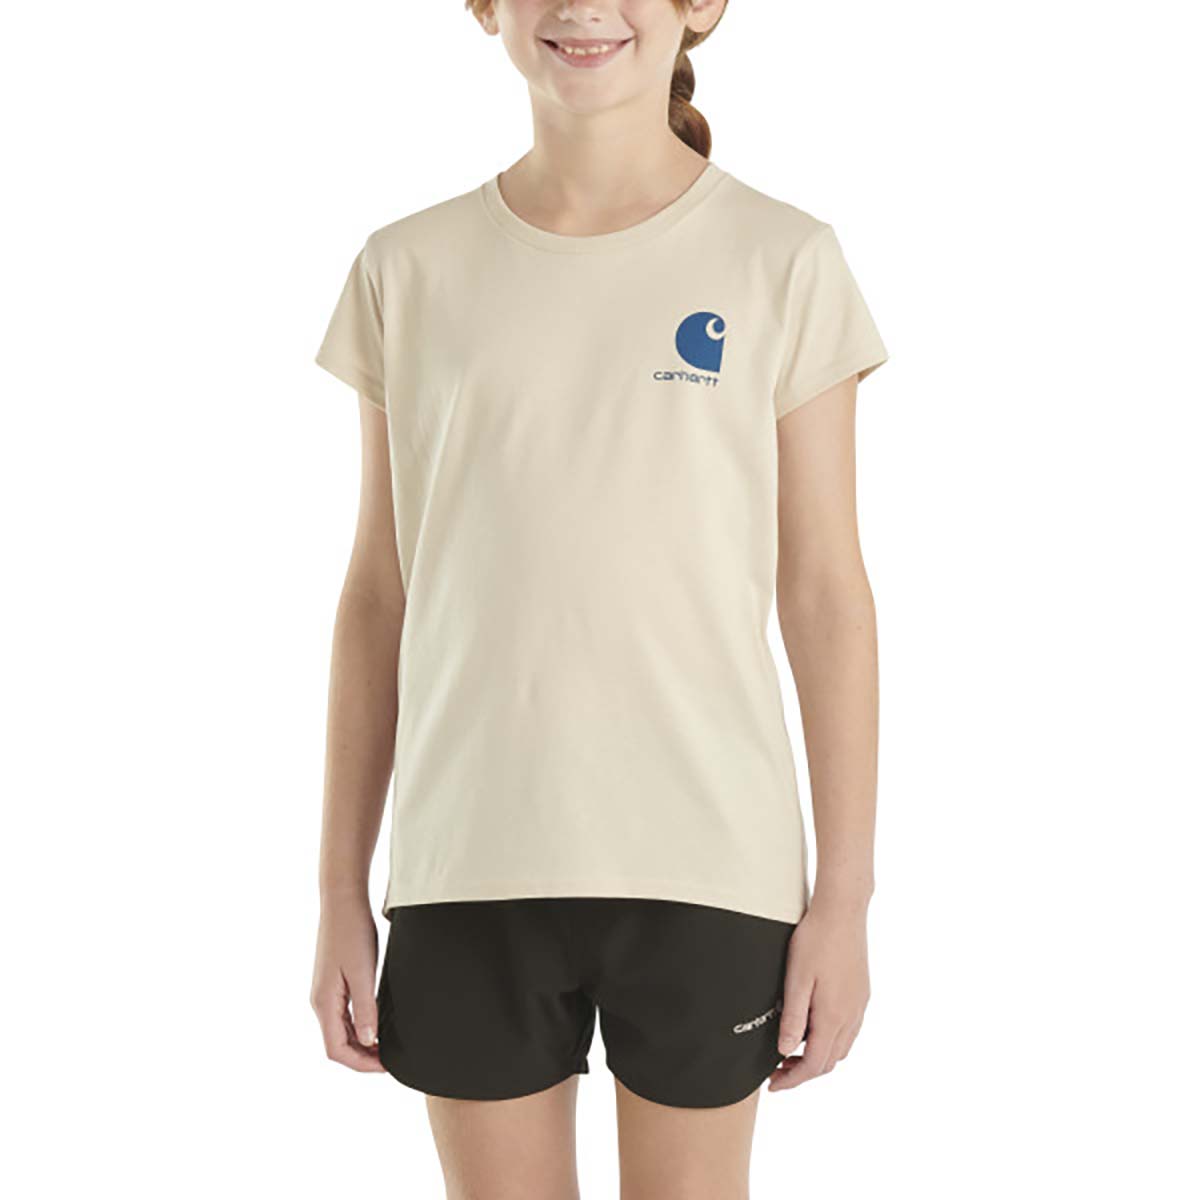 Carhartt Girls' Short Sleeve Mountain T-Shirt